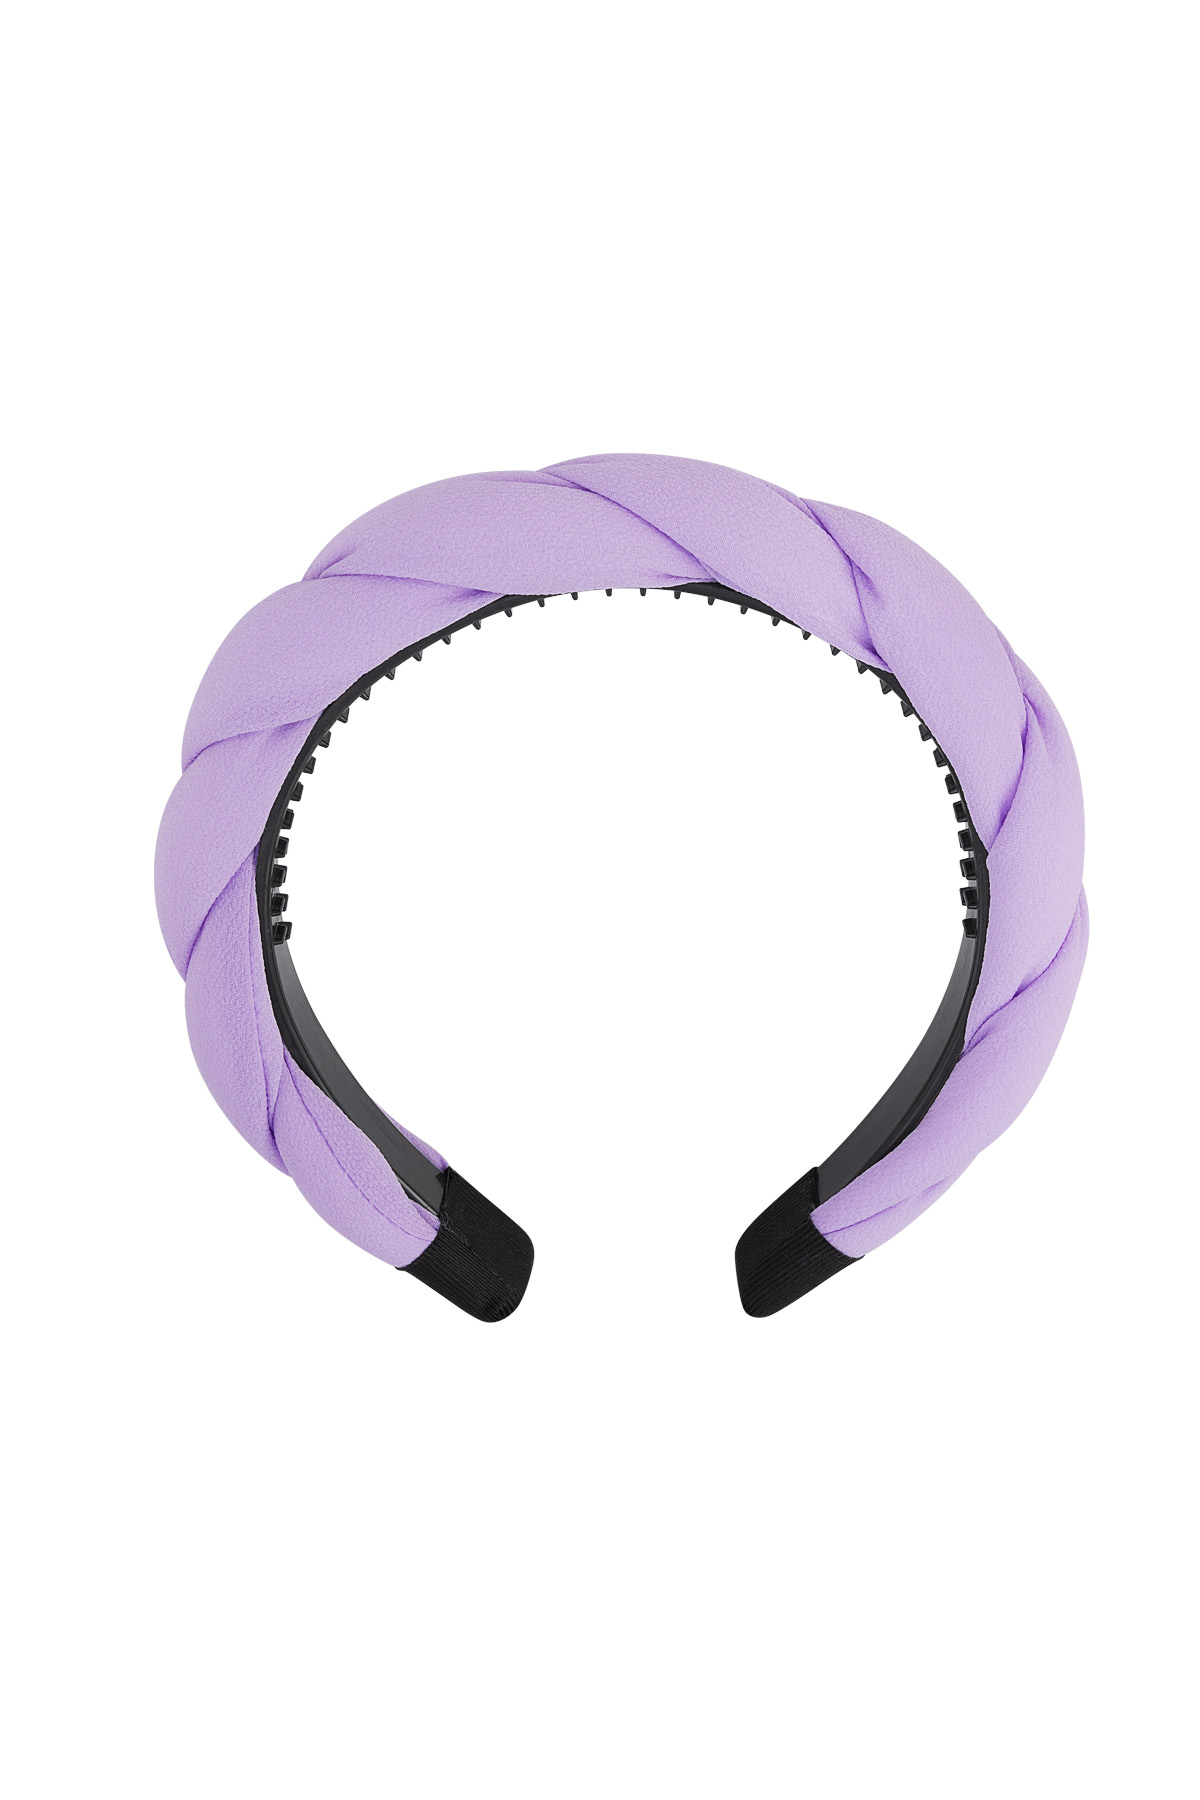 Detalle de trenza de cinta para el pelo - lila Morado Plástico h5 